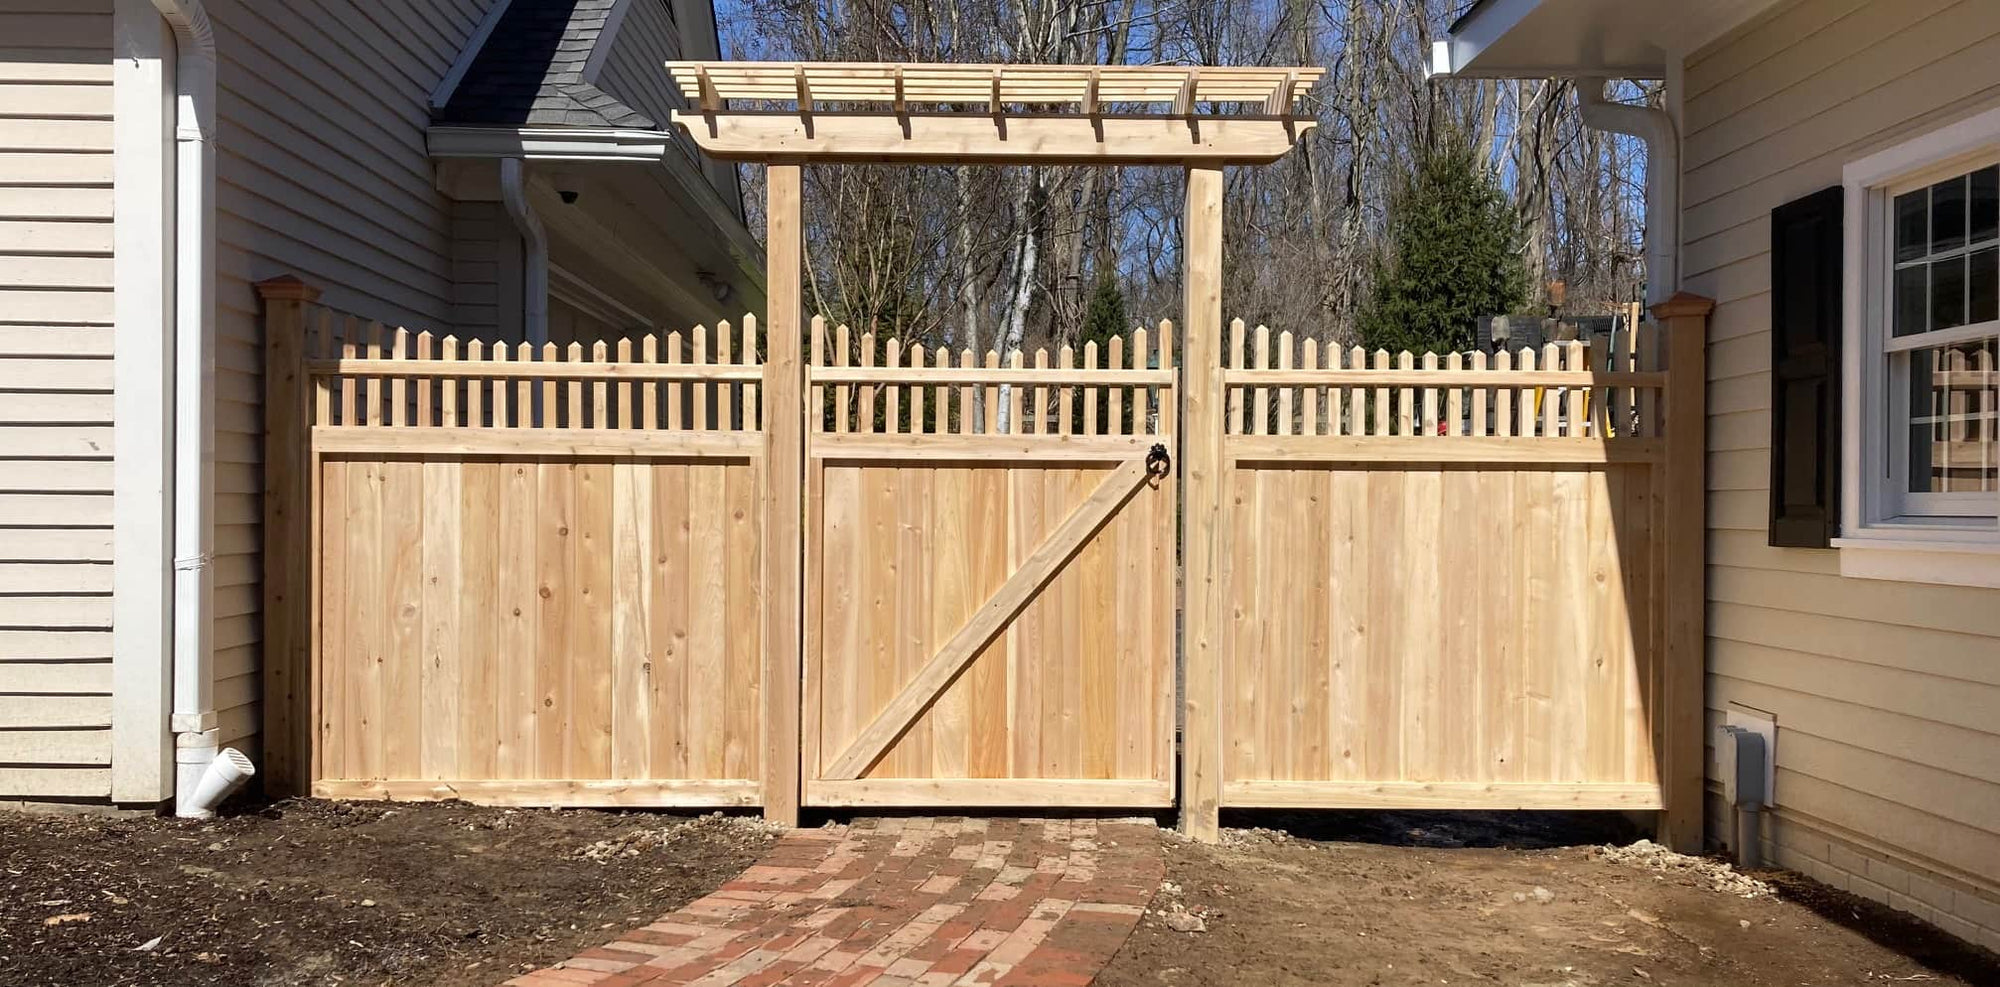 cedartech wooden fence